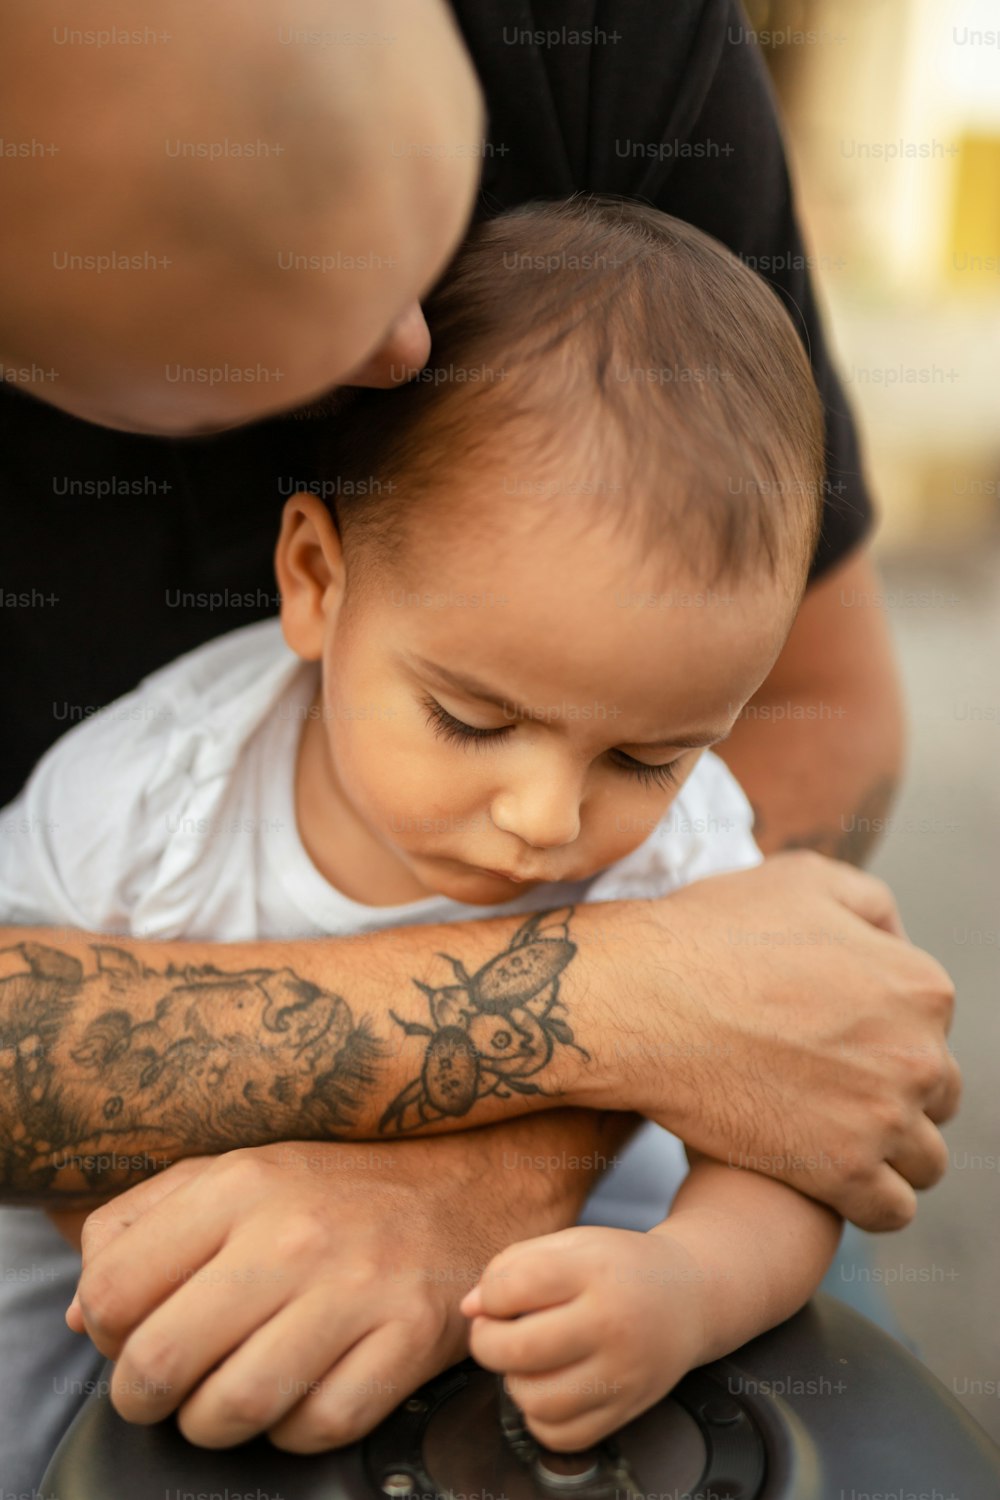 Un homme tenant un bébé avec un tatouage sur le bras